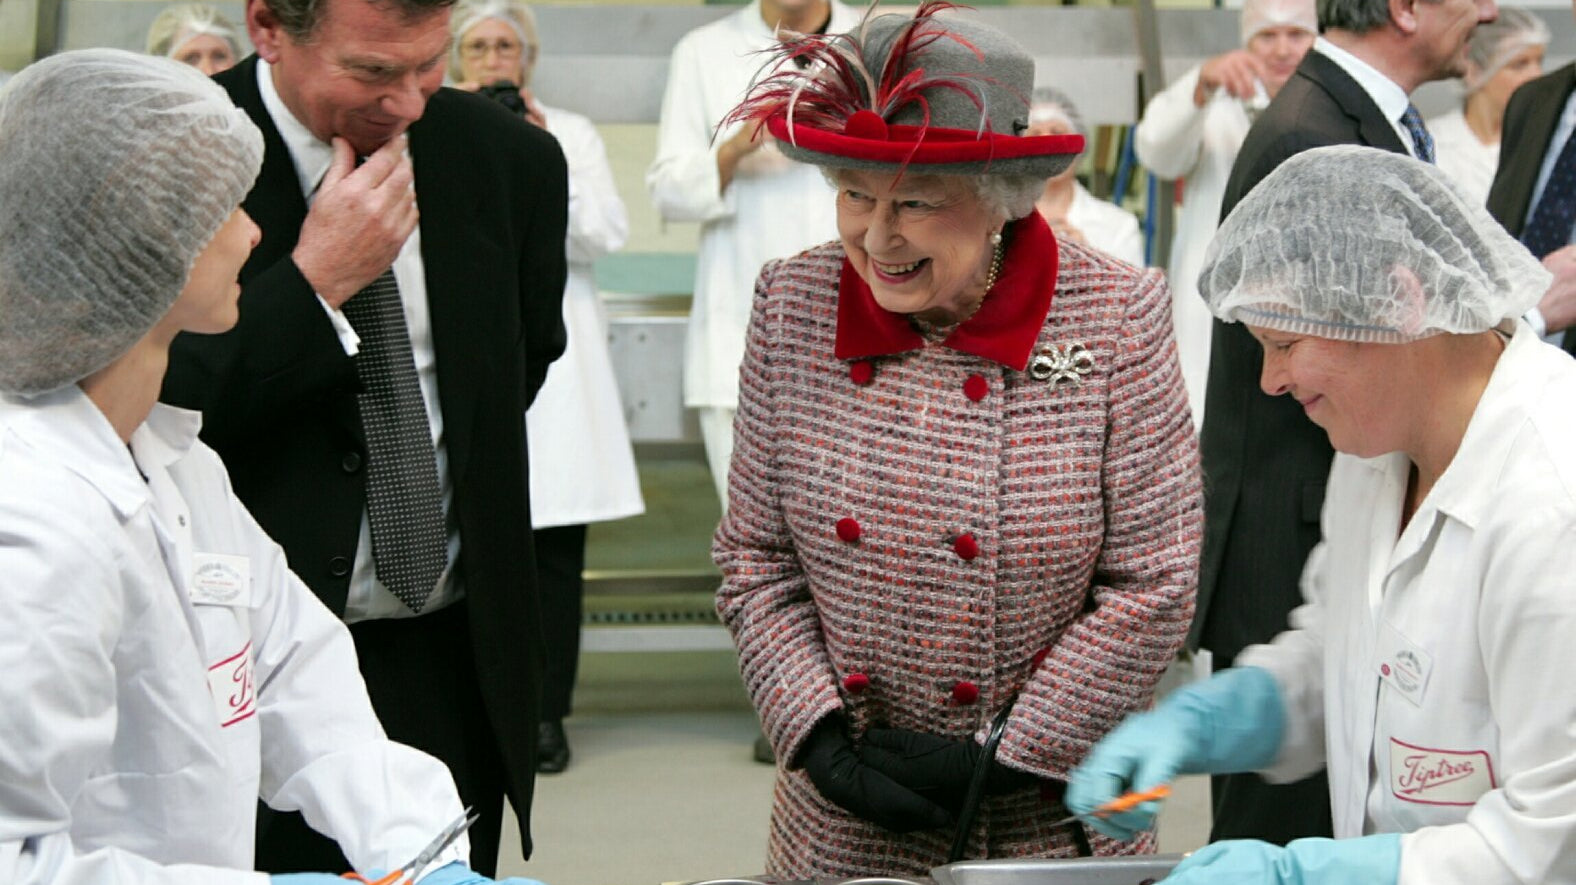 Her majesty Queen Elizabeth II